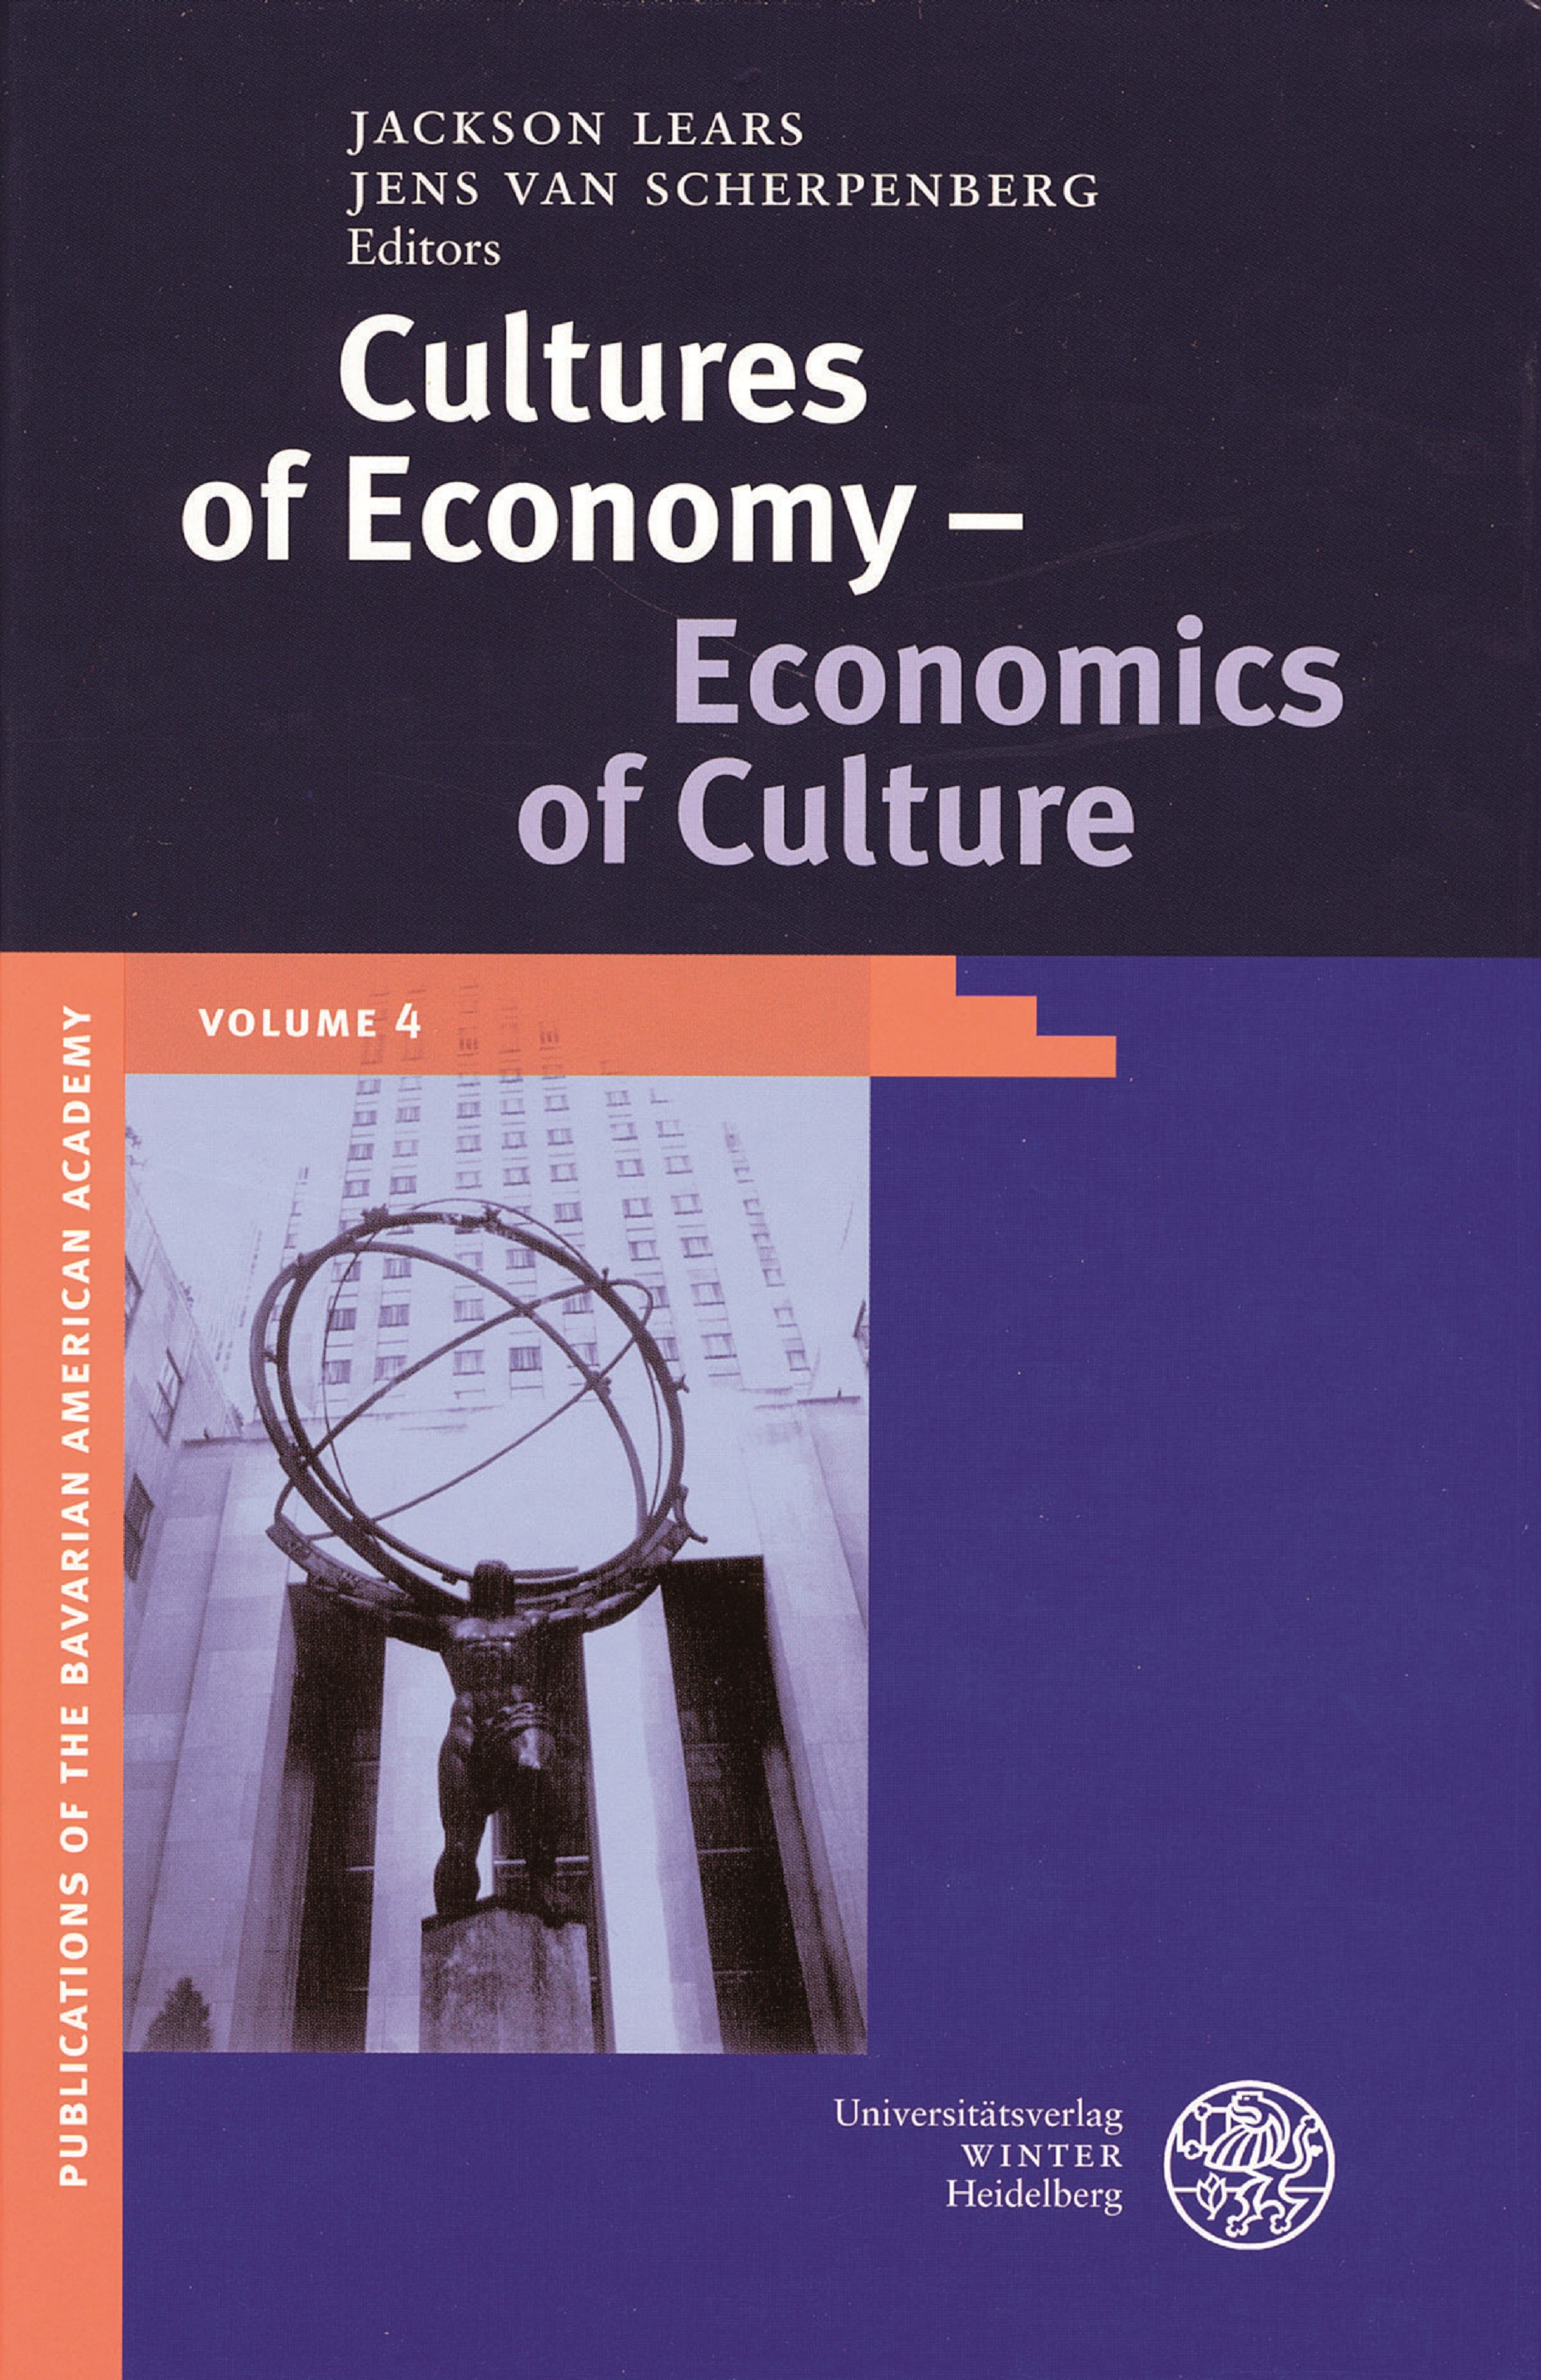 BAA publication Vol. 4 Cultures of Economy – Economics of Culture